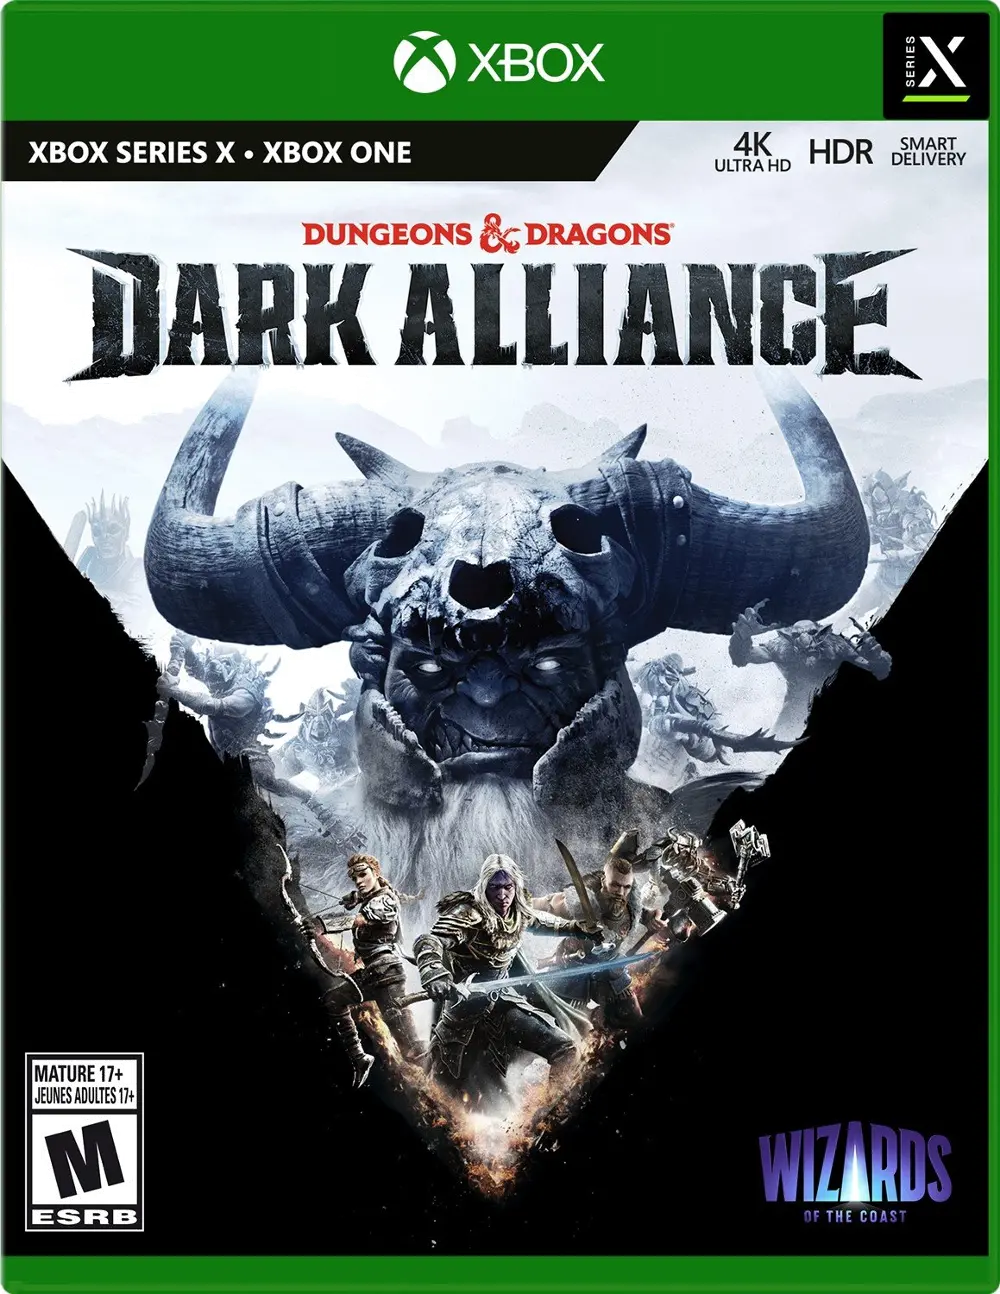 XBSX/DND_DRKALLIANCE Dungeons and Dragons: Dark Alliance - XBOX Series X-1